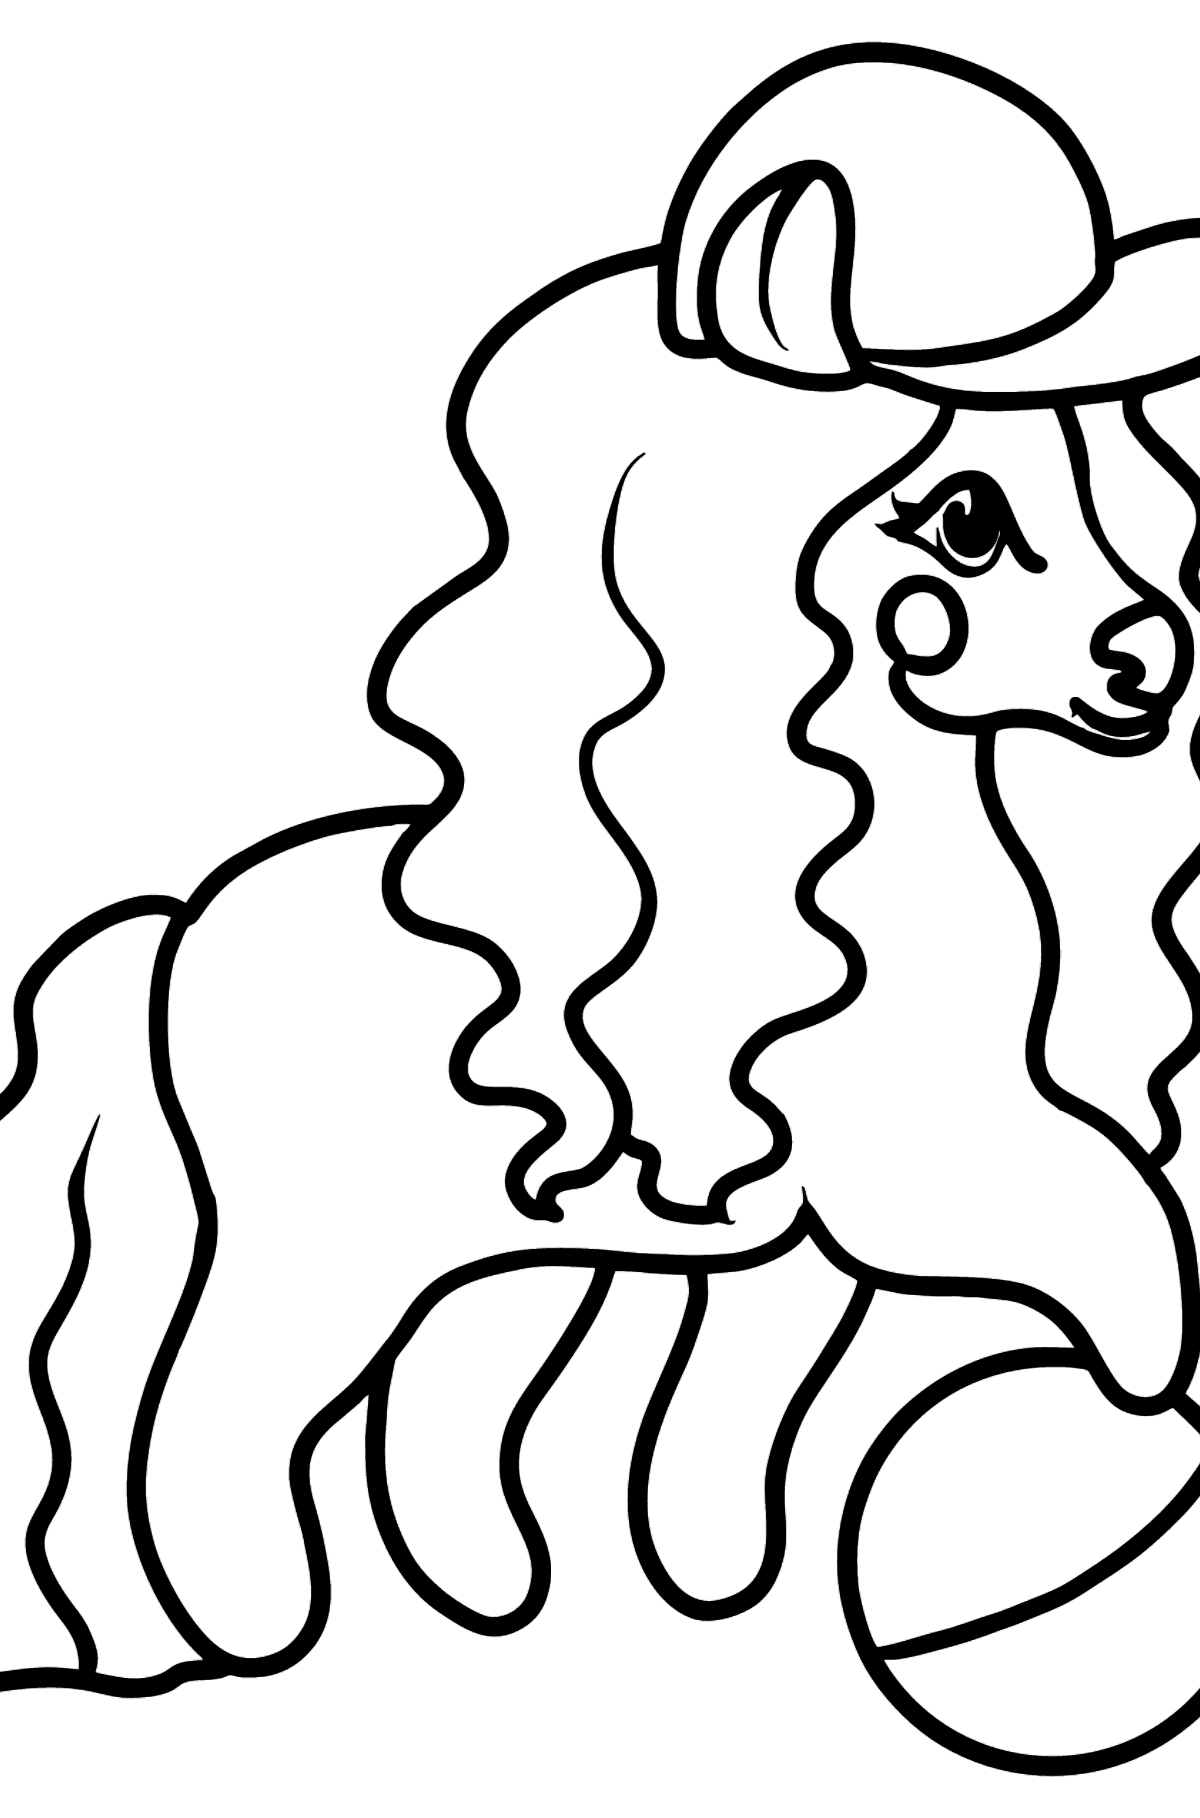 Dibujo para colorear - Pony con pelota - Dibujos para Colorear para Niños